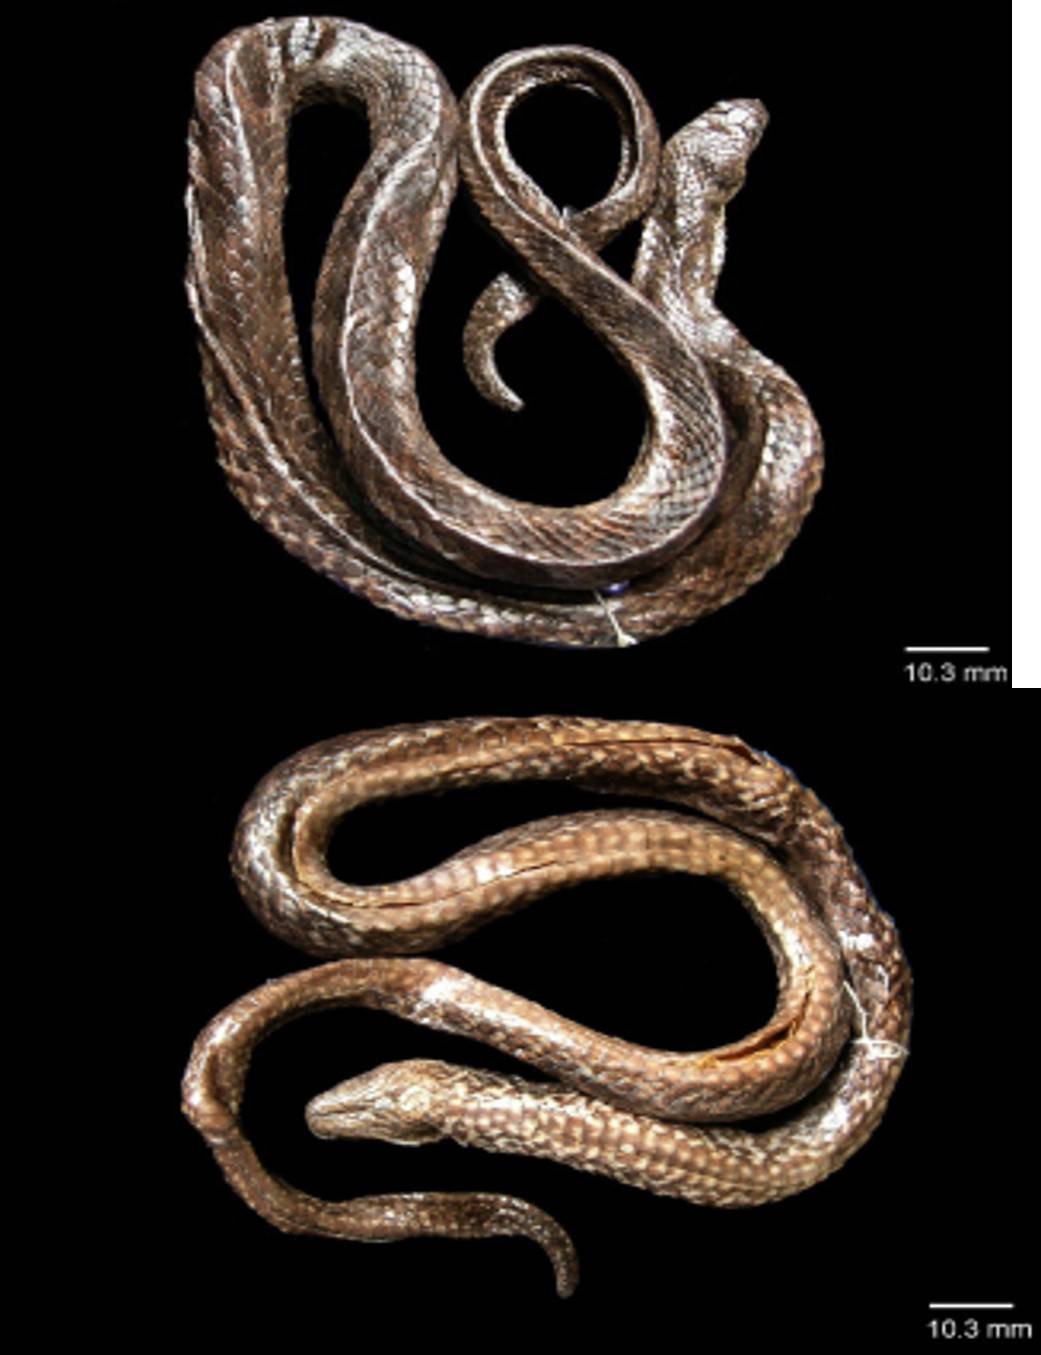 Spesies ular air tawwar ditemukan tim peneliti BRIN di Danau Towuti, Kabupaten Luwu Timur, Sulawesi Selatan. Ular ini diberi nama Hypsiscopus indonesiensis. FOTO:BRIN